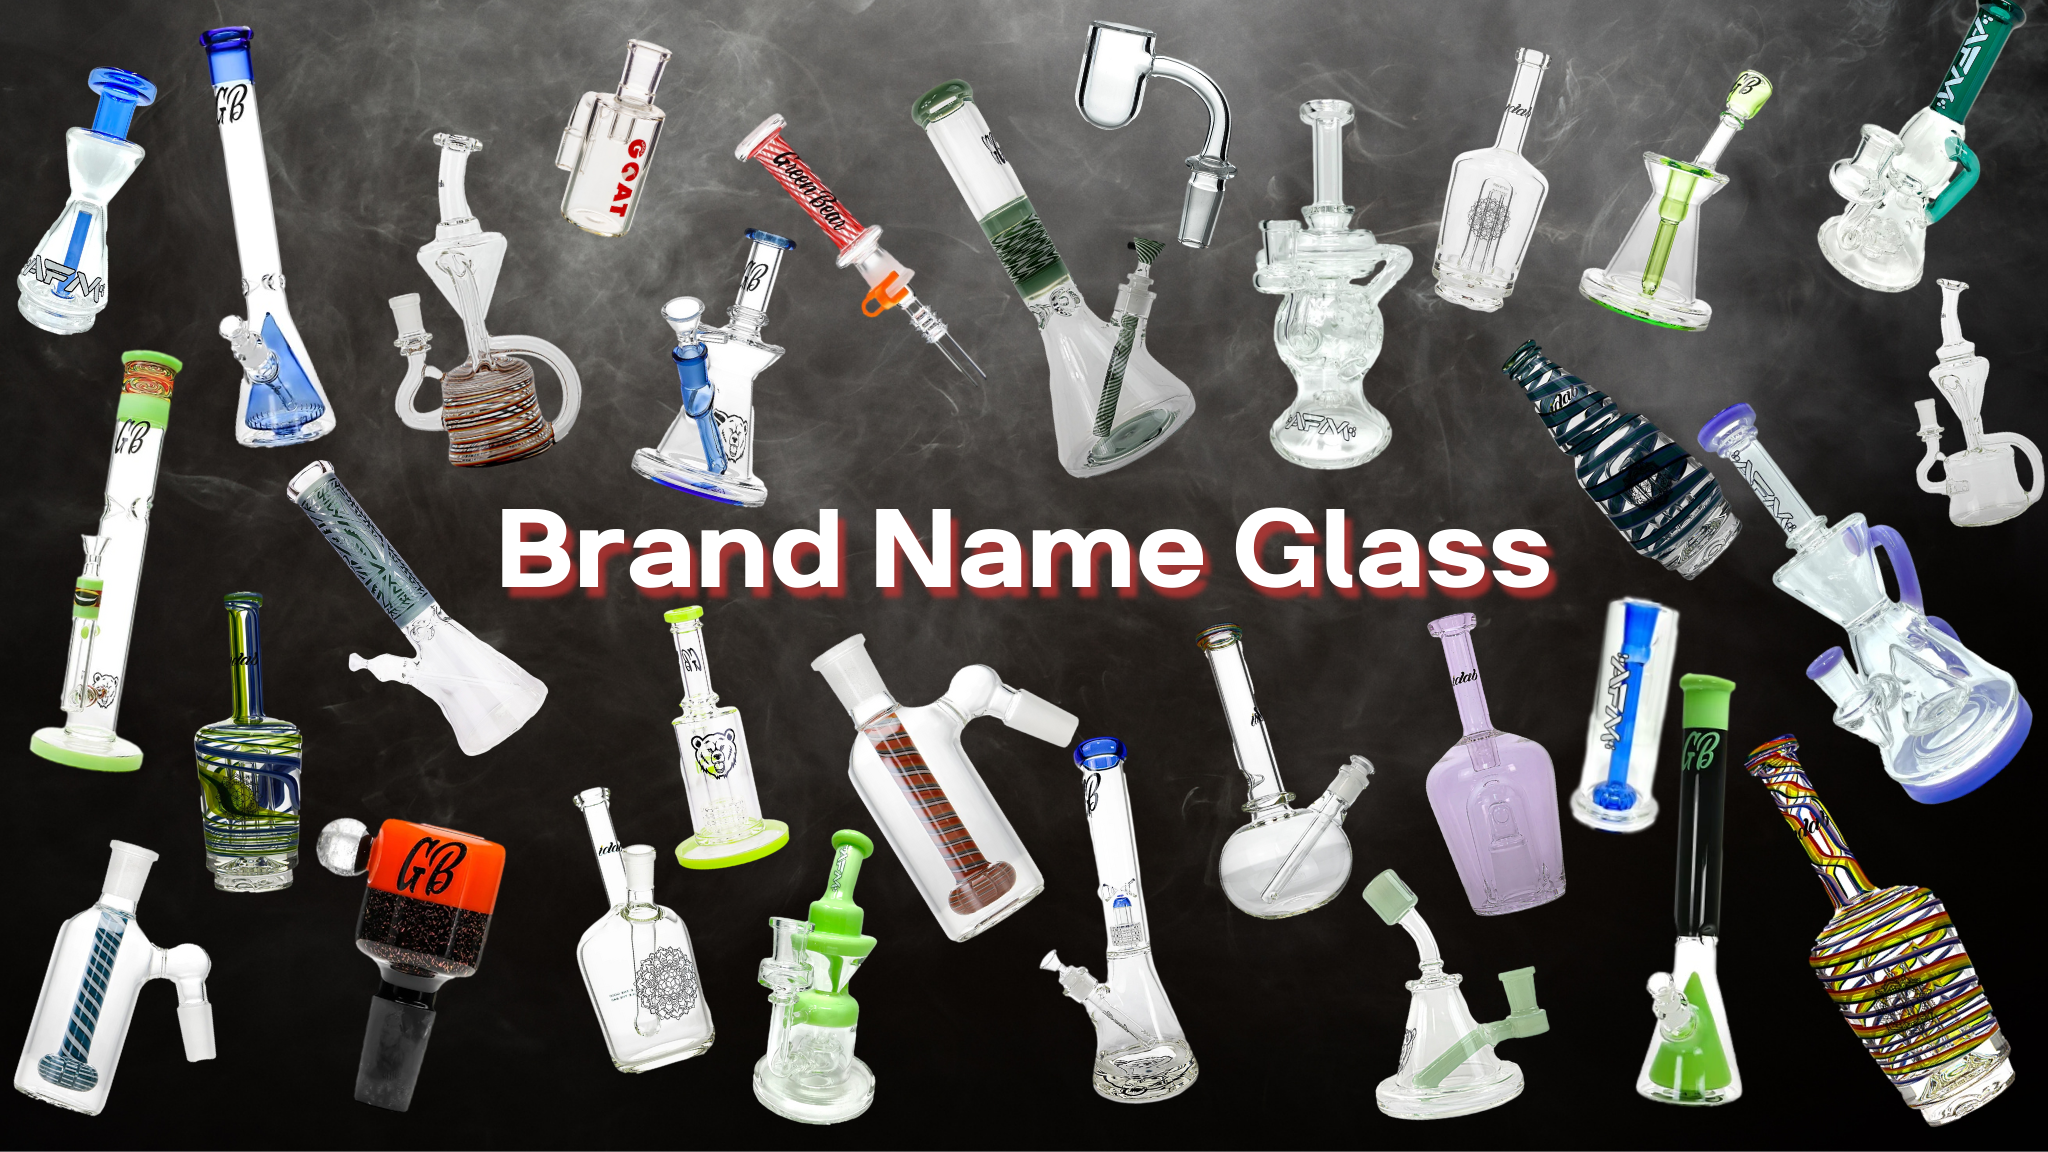 Brand Name Glass